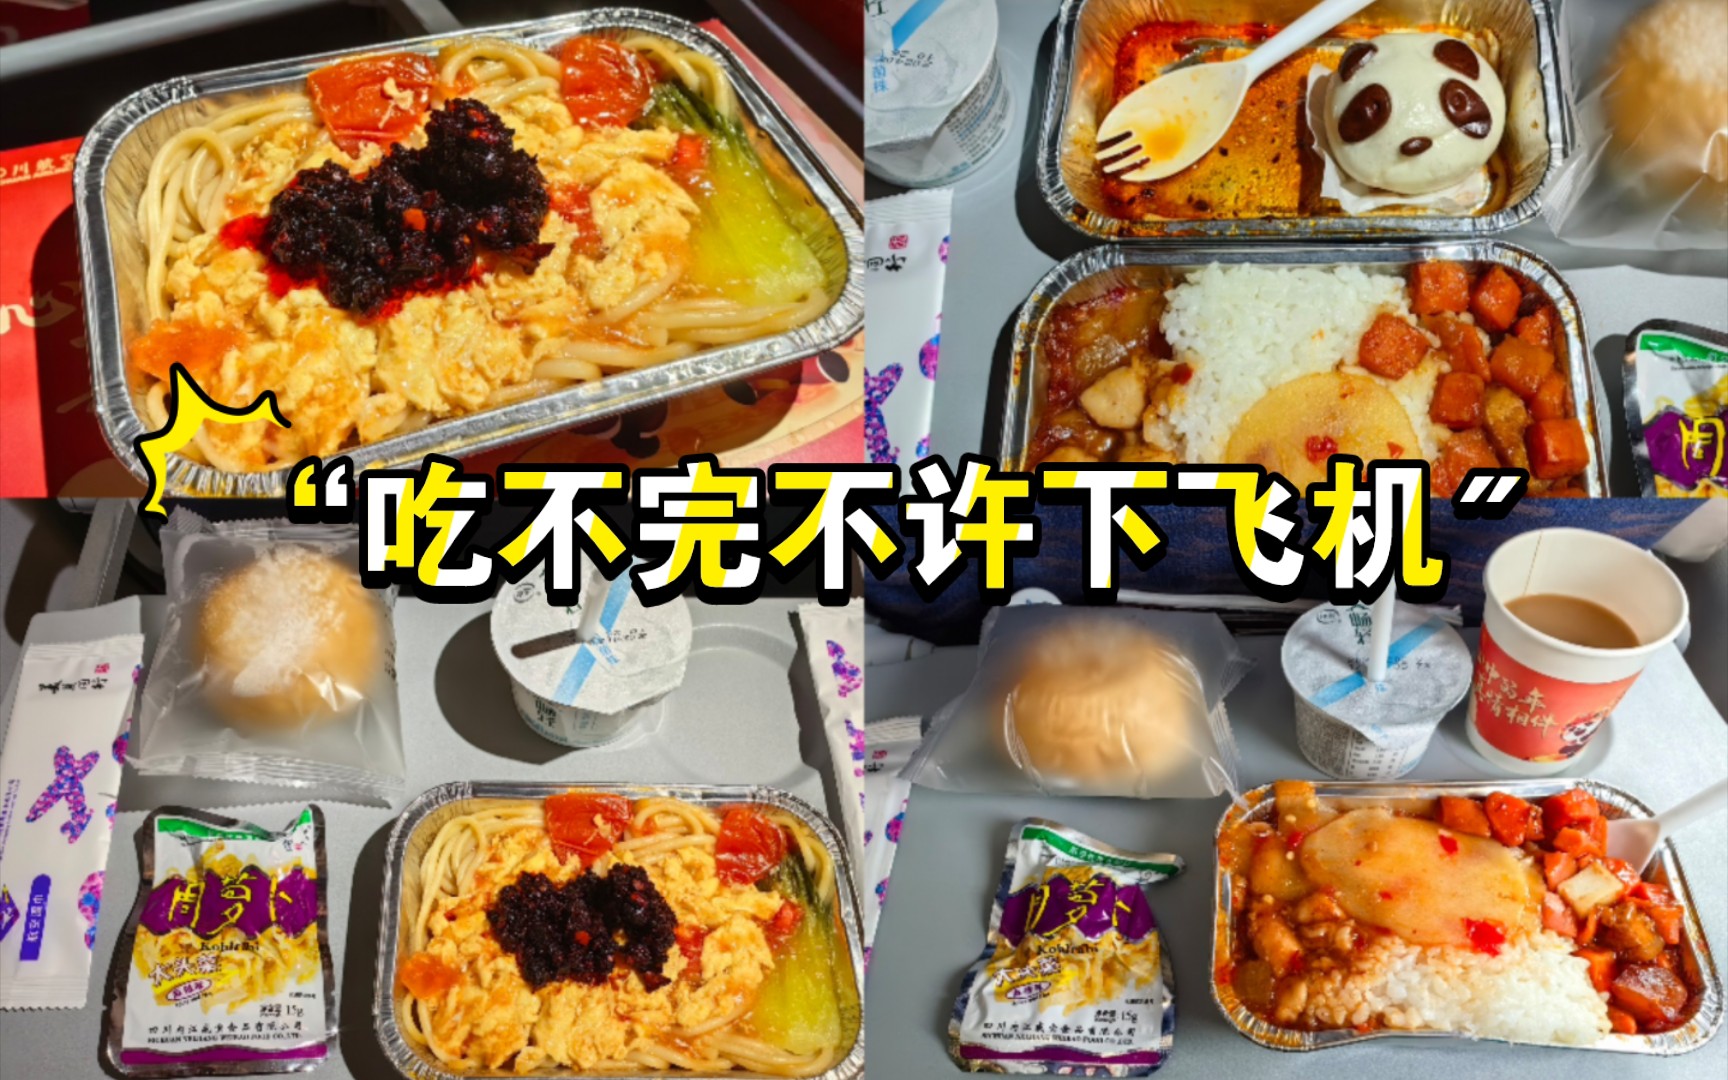 四川航空经济舱上了8次餐……